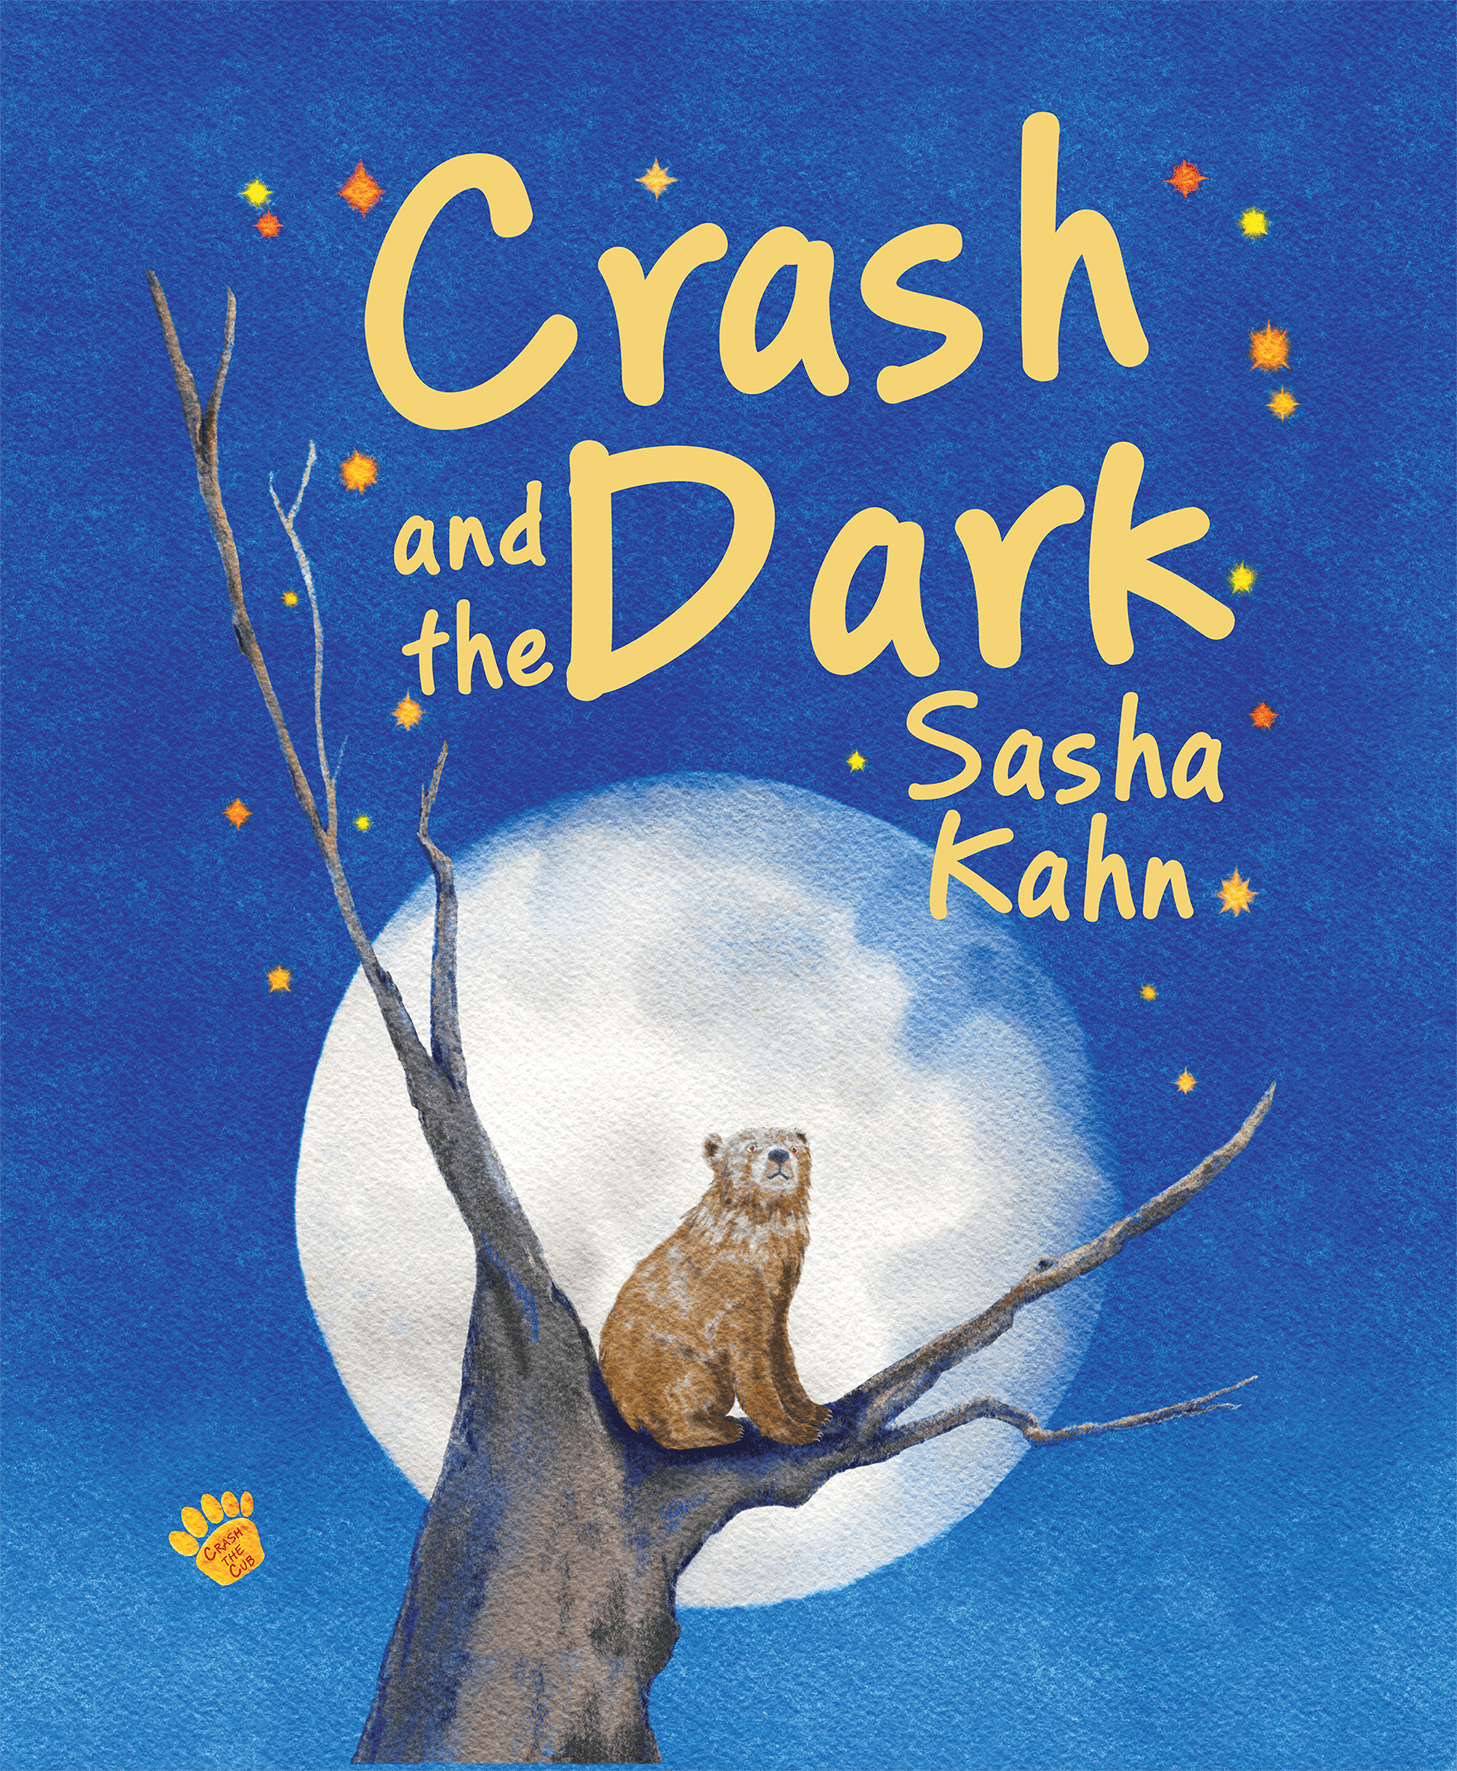 Crash the Cub Book Series